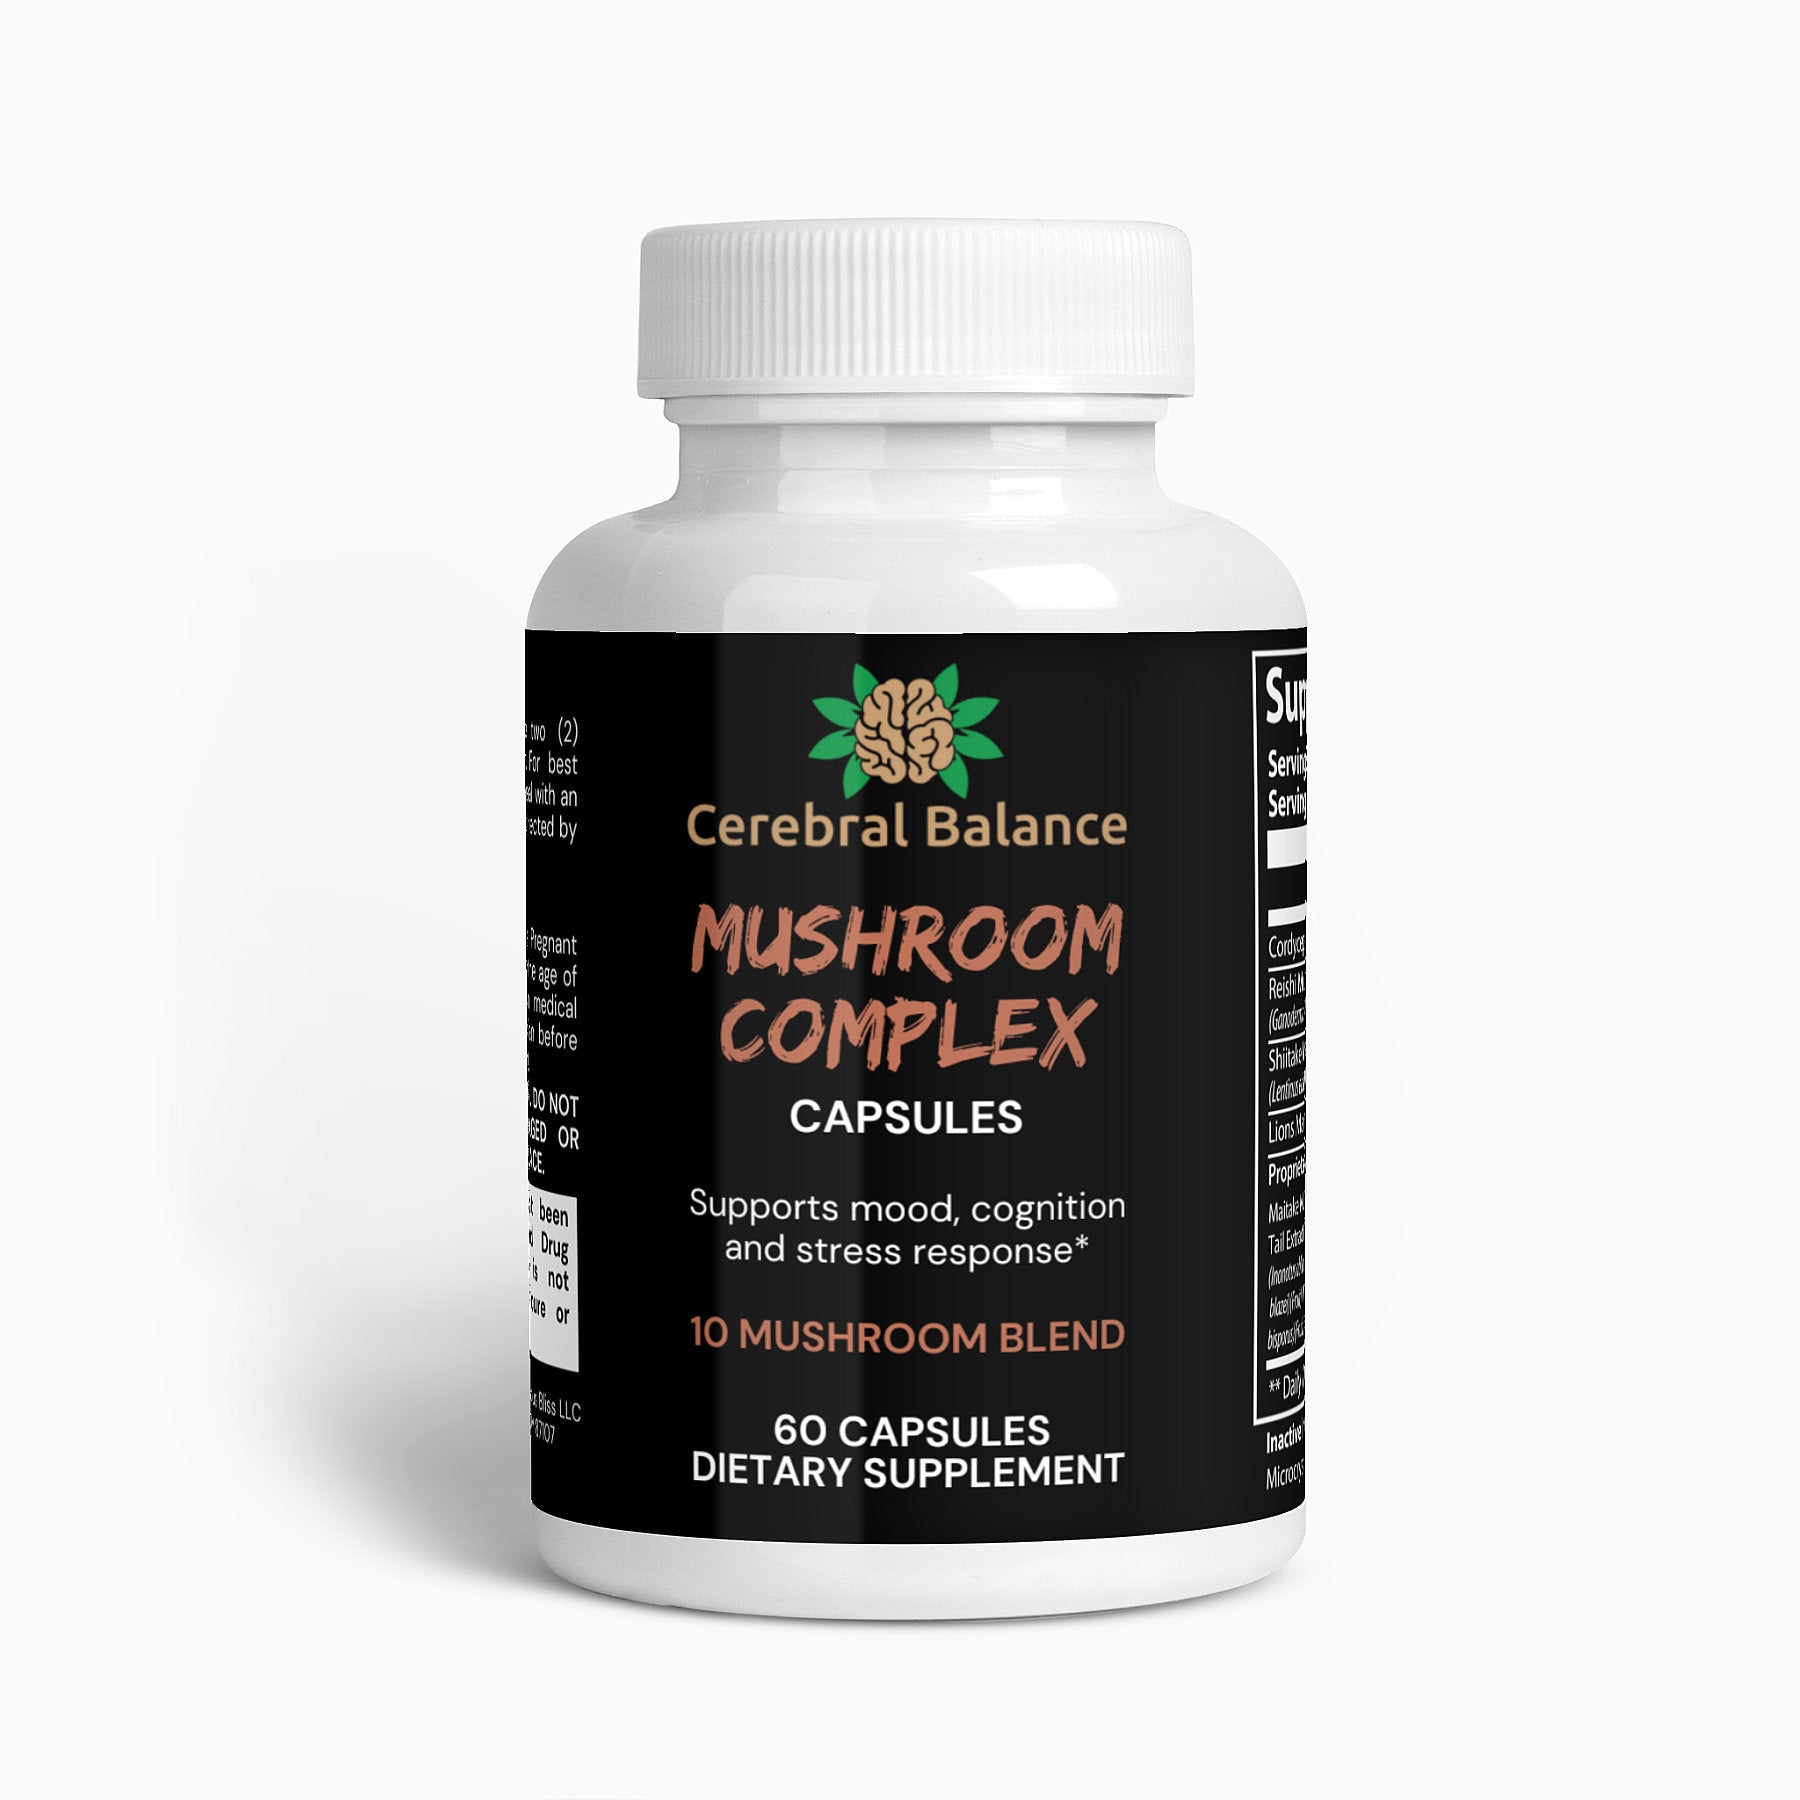 Mushroom Complex Capsules | 10 Mushroom Blend